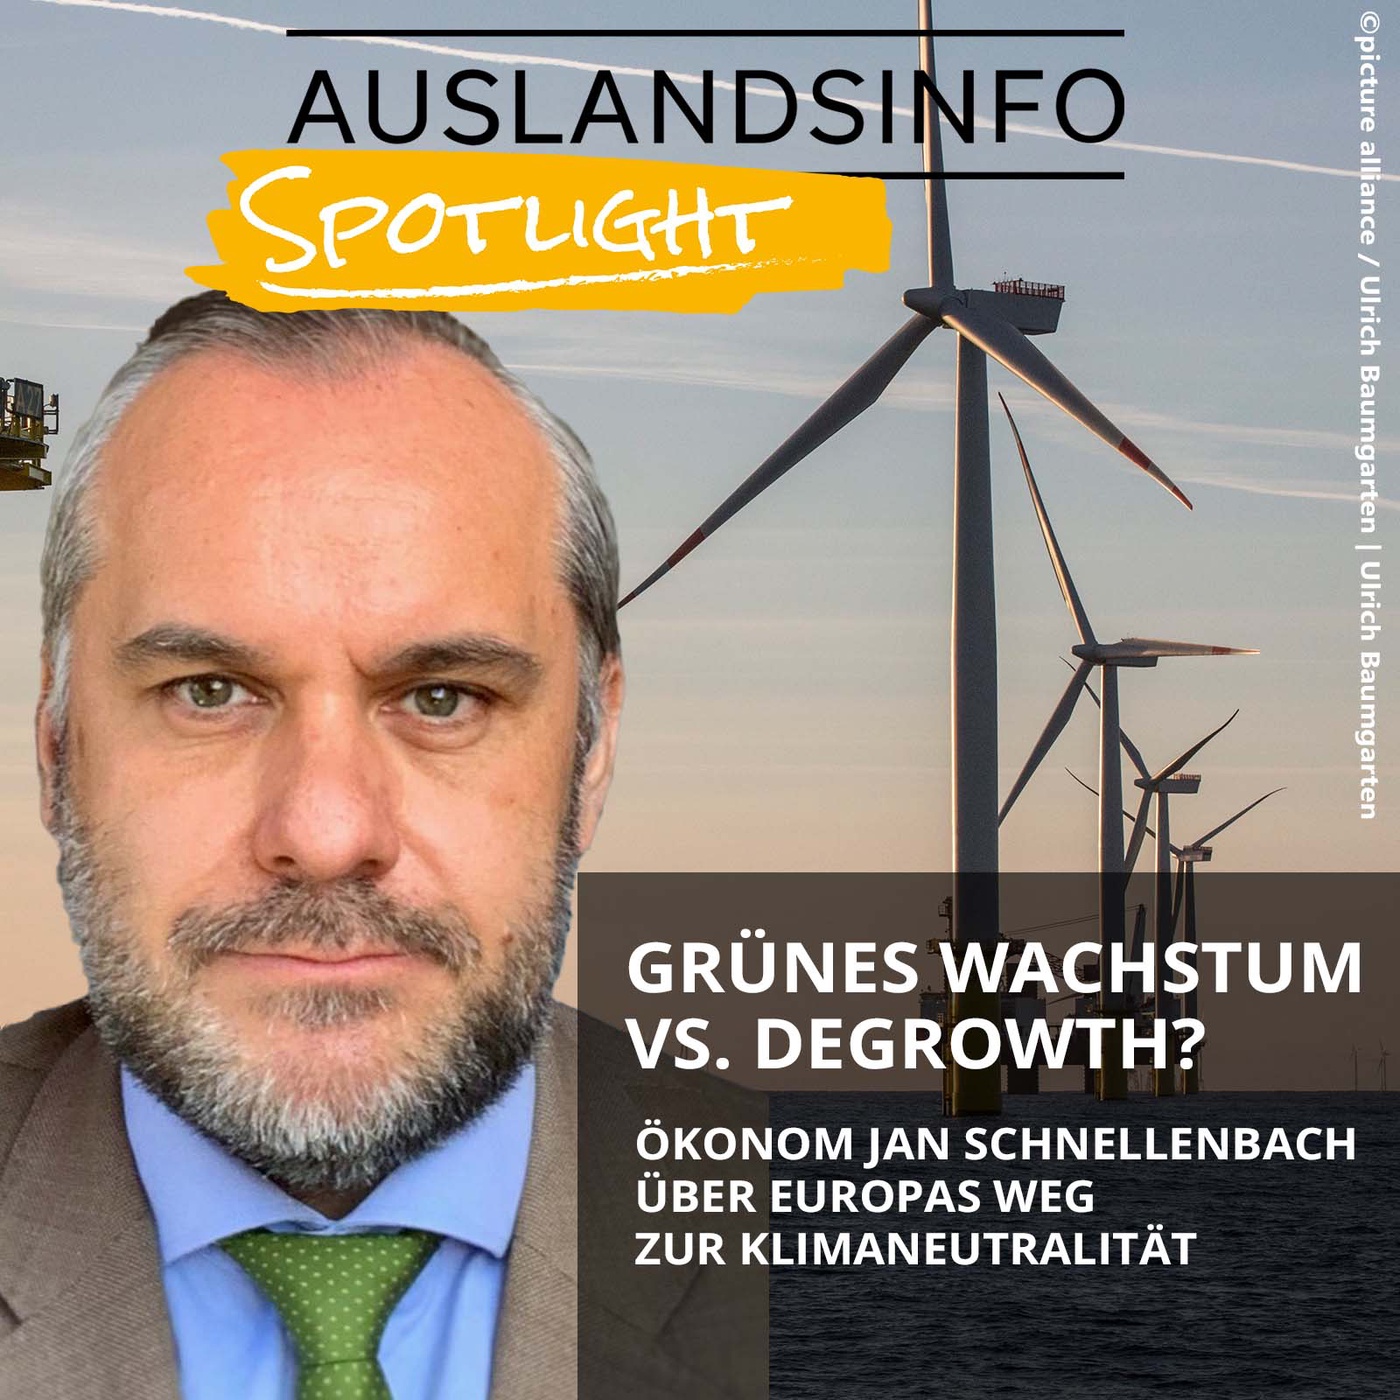 Grünes Wachstum vs. Degrowth? Prof. Jan Schnellenbach über Europas Weg zur Klimaneutralität